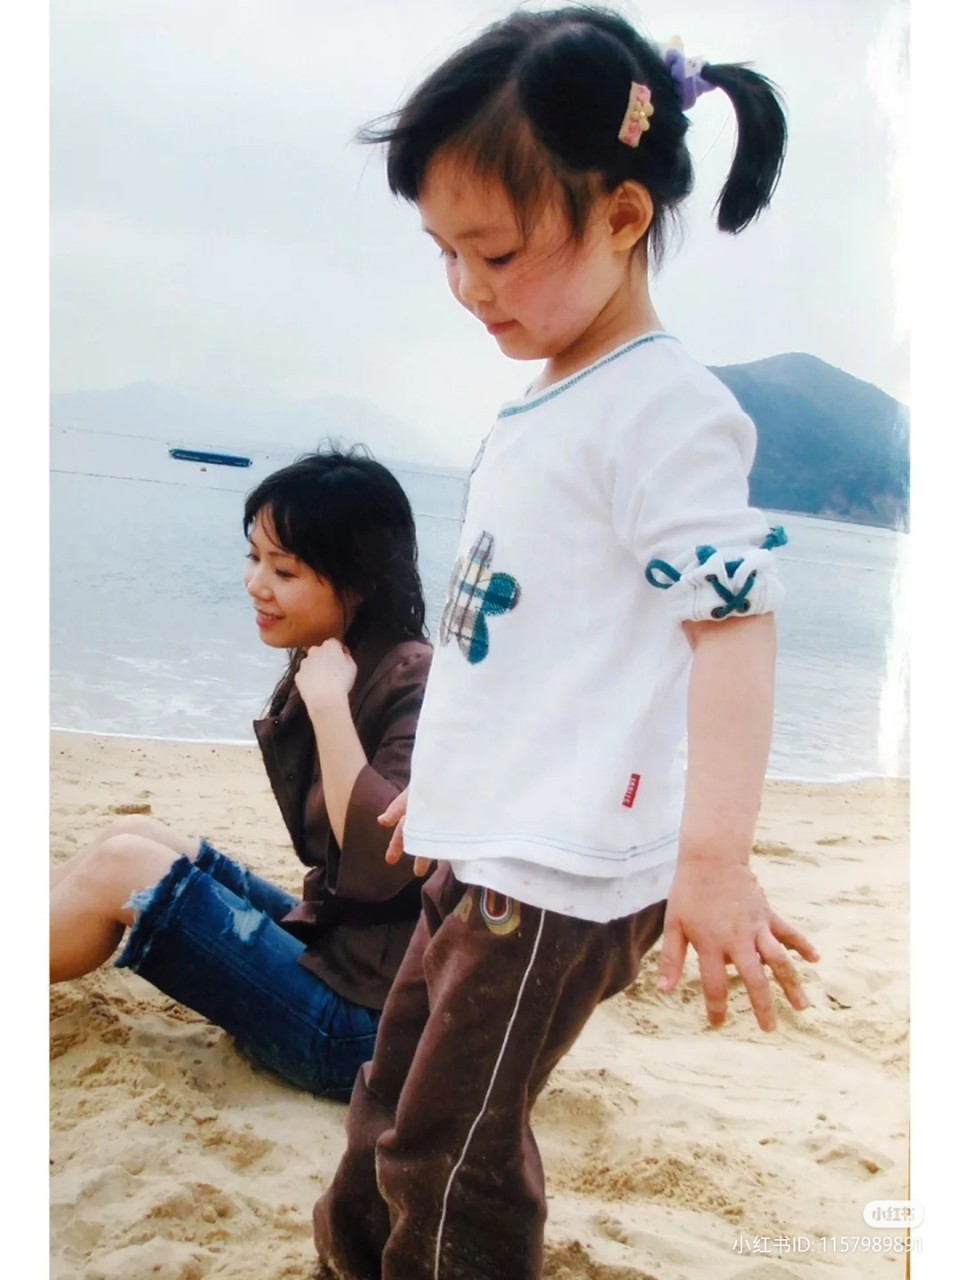 刘秀盈日前分享一张与妈妈吕丽君16年前的合照。